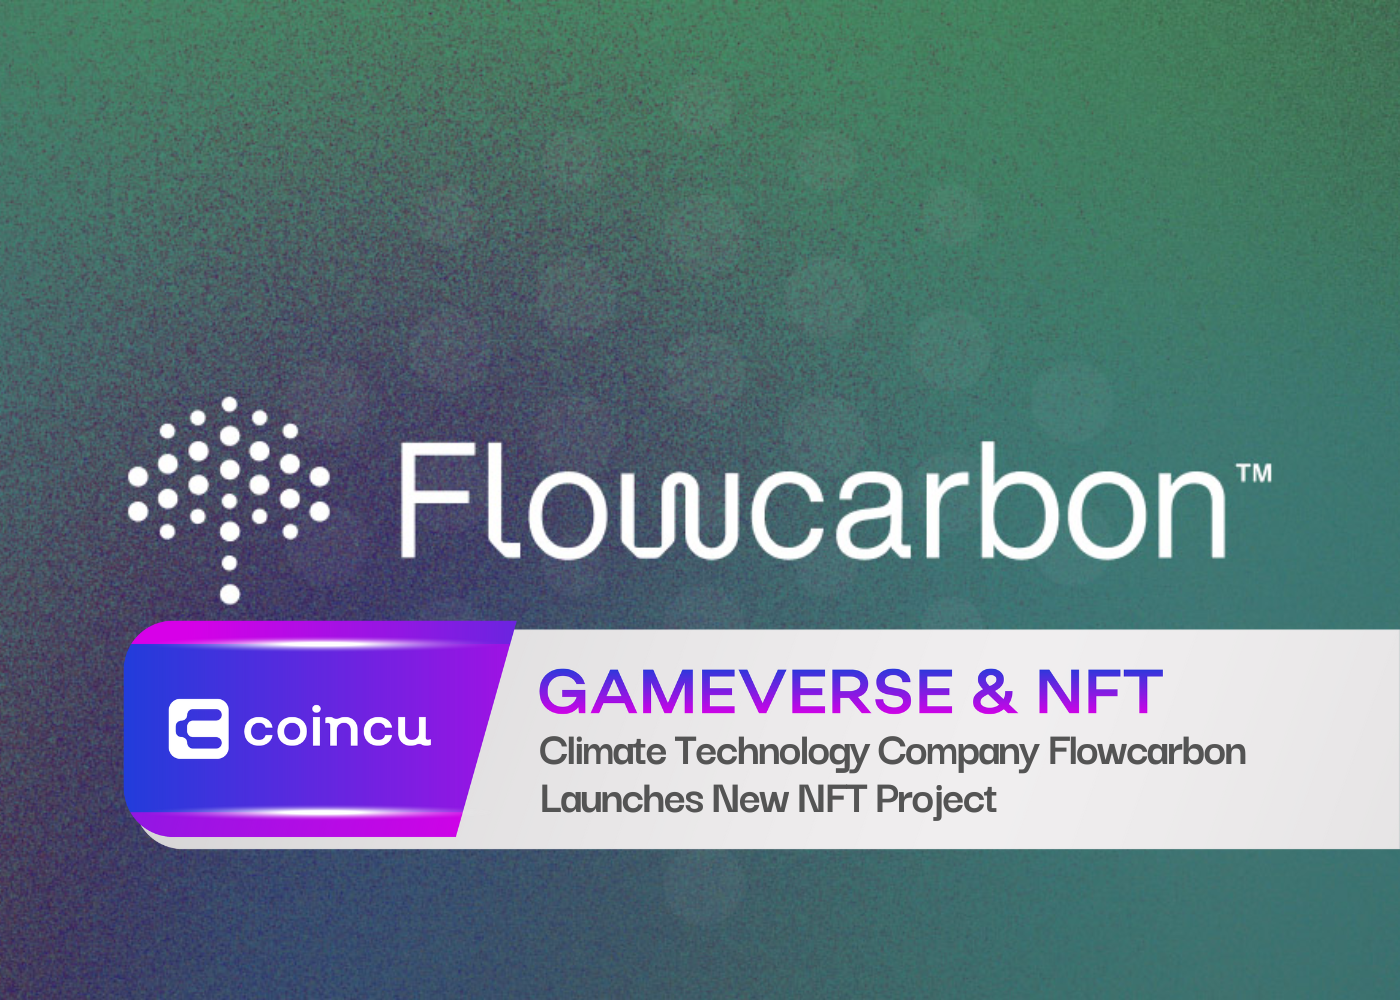 La société de technologie climatique Flowcarbon lance un nouveau projet NFT